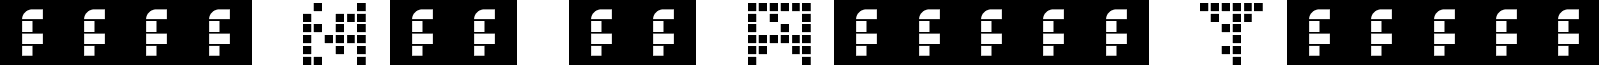 00ne Not so Atroce Tetris font - 00ne_not_so_atroce_tetris.ttf